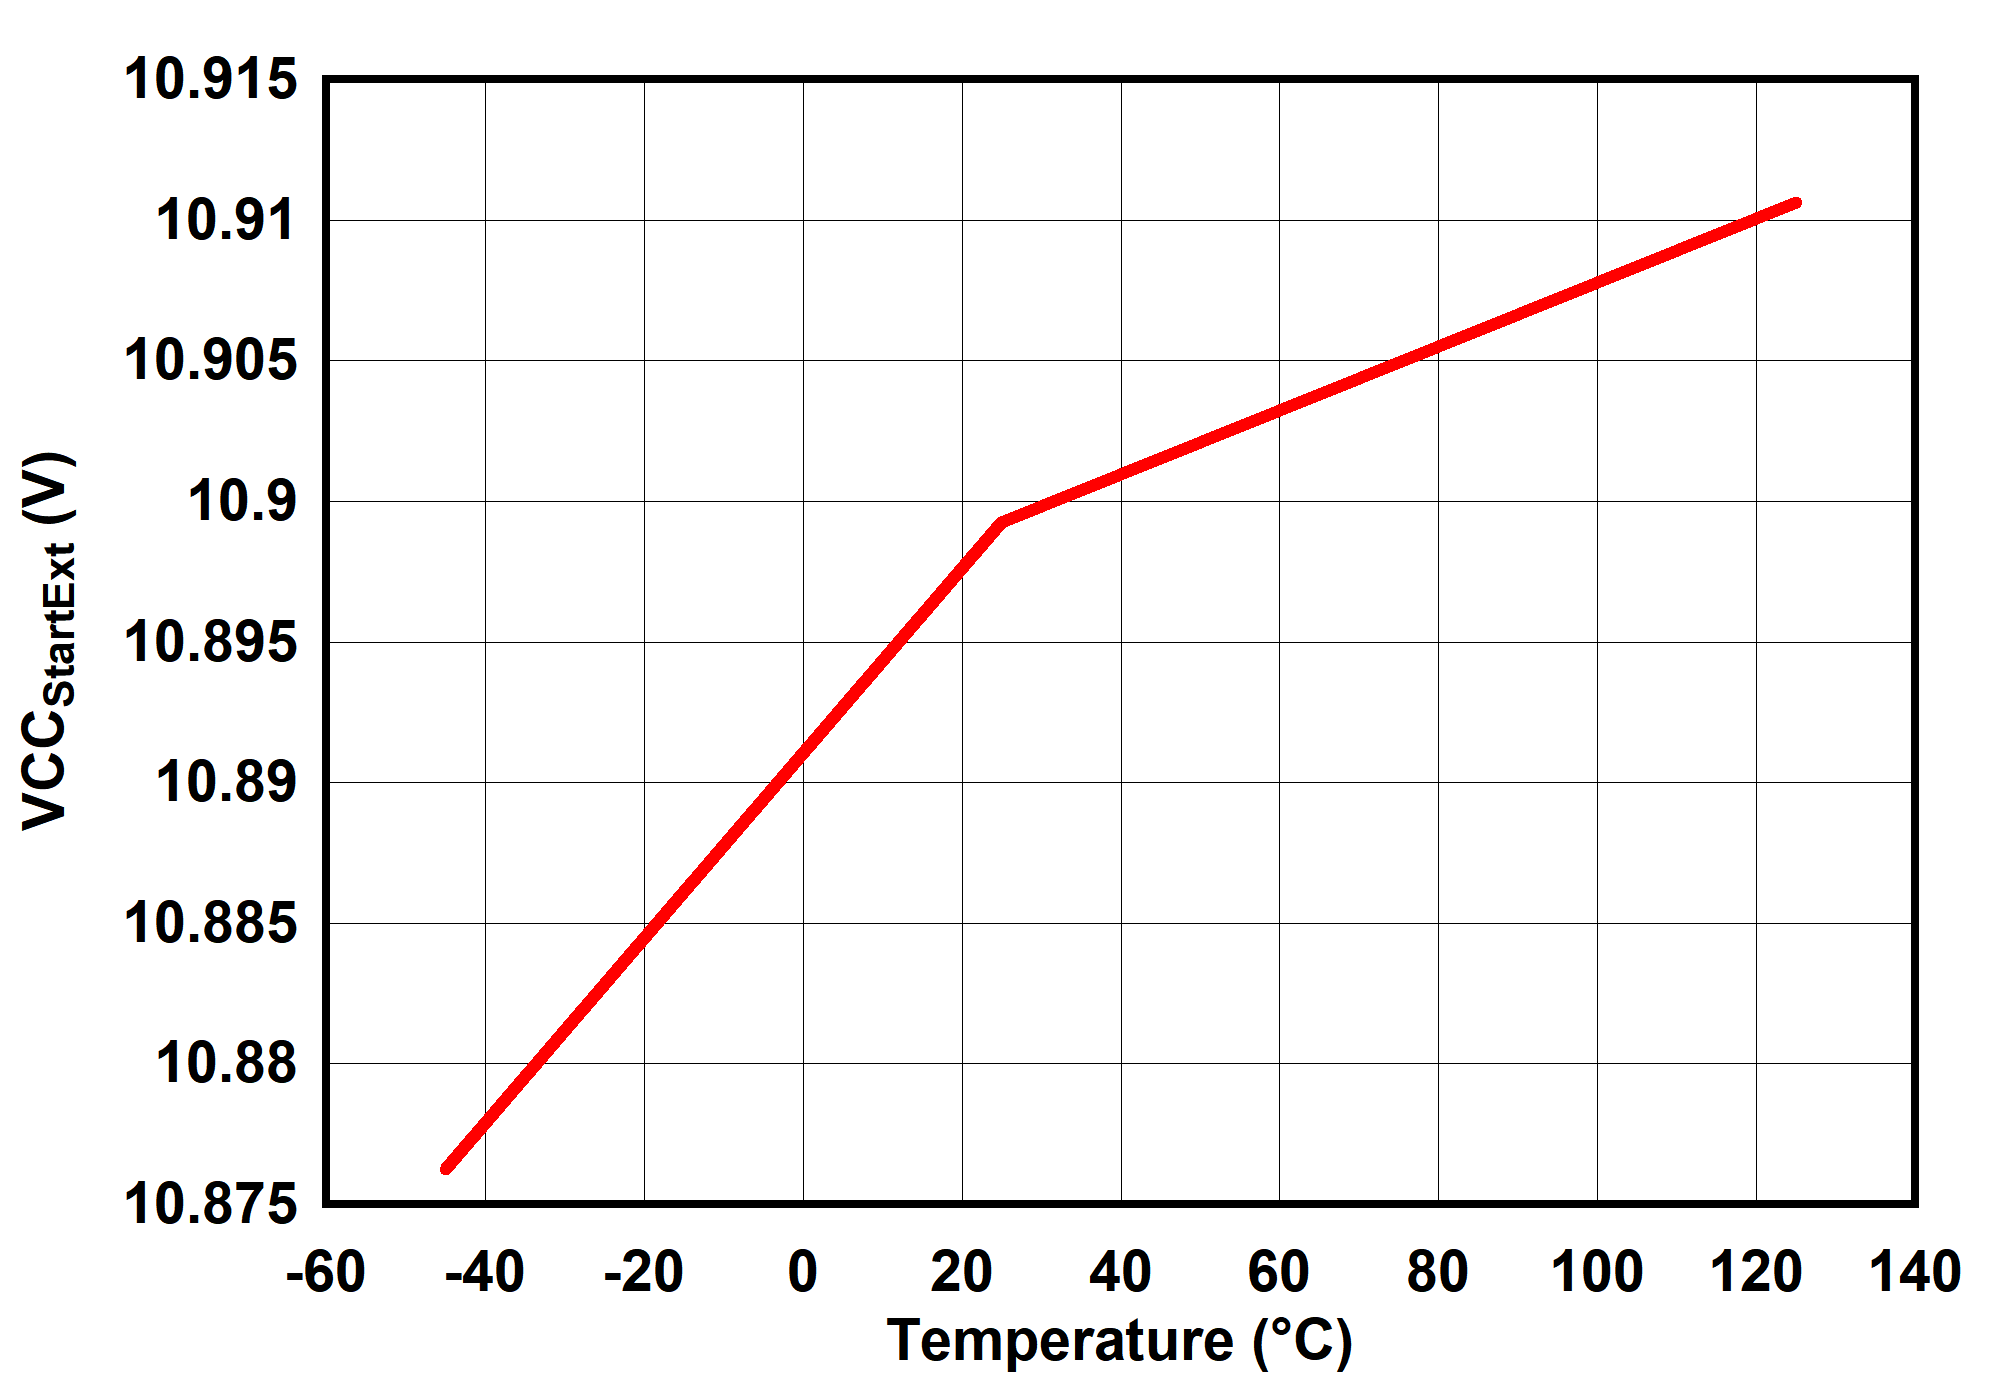 UCC25660 VCCStartExt vs Temperature